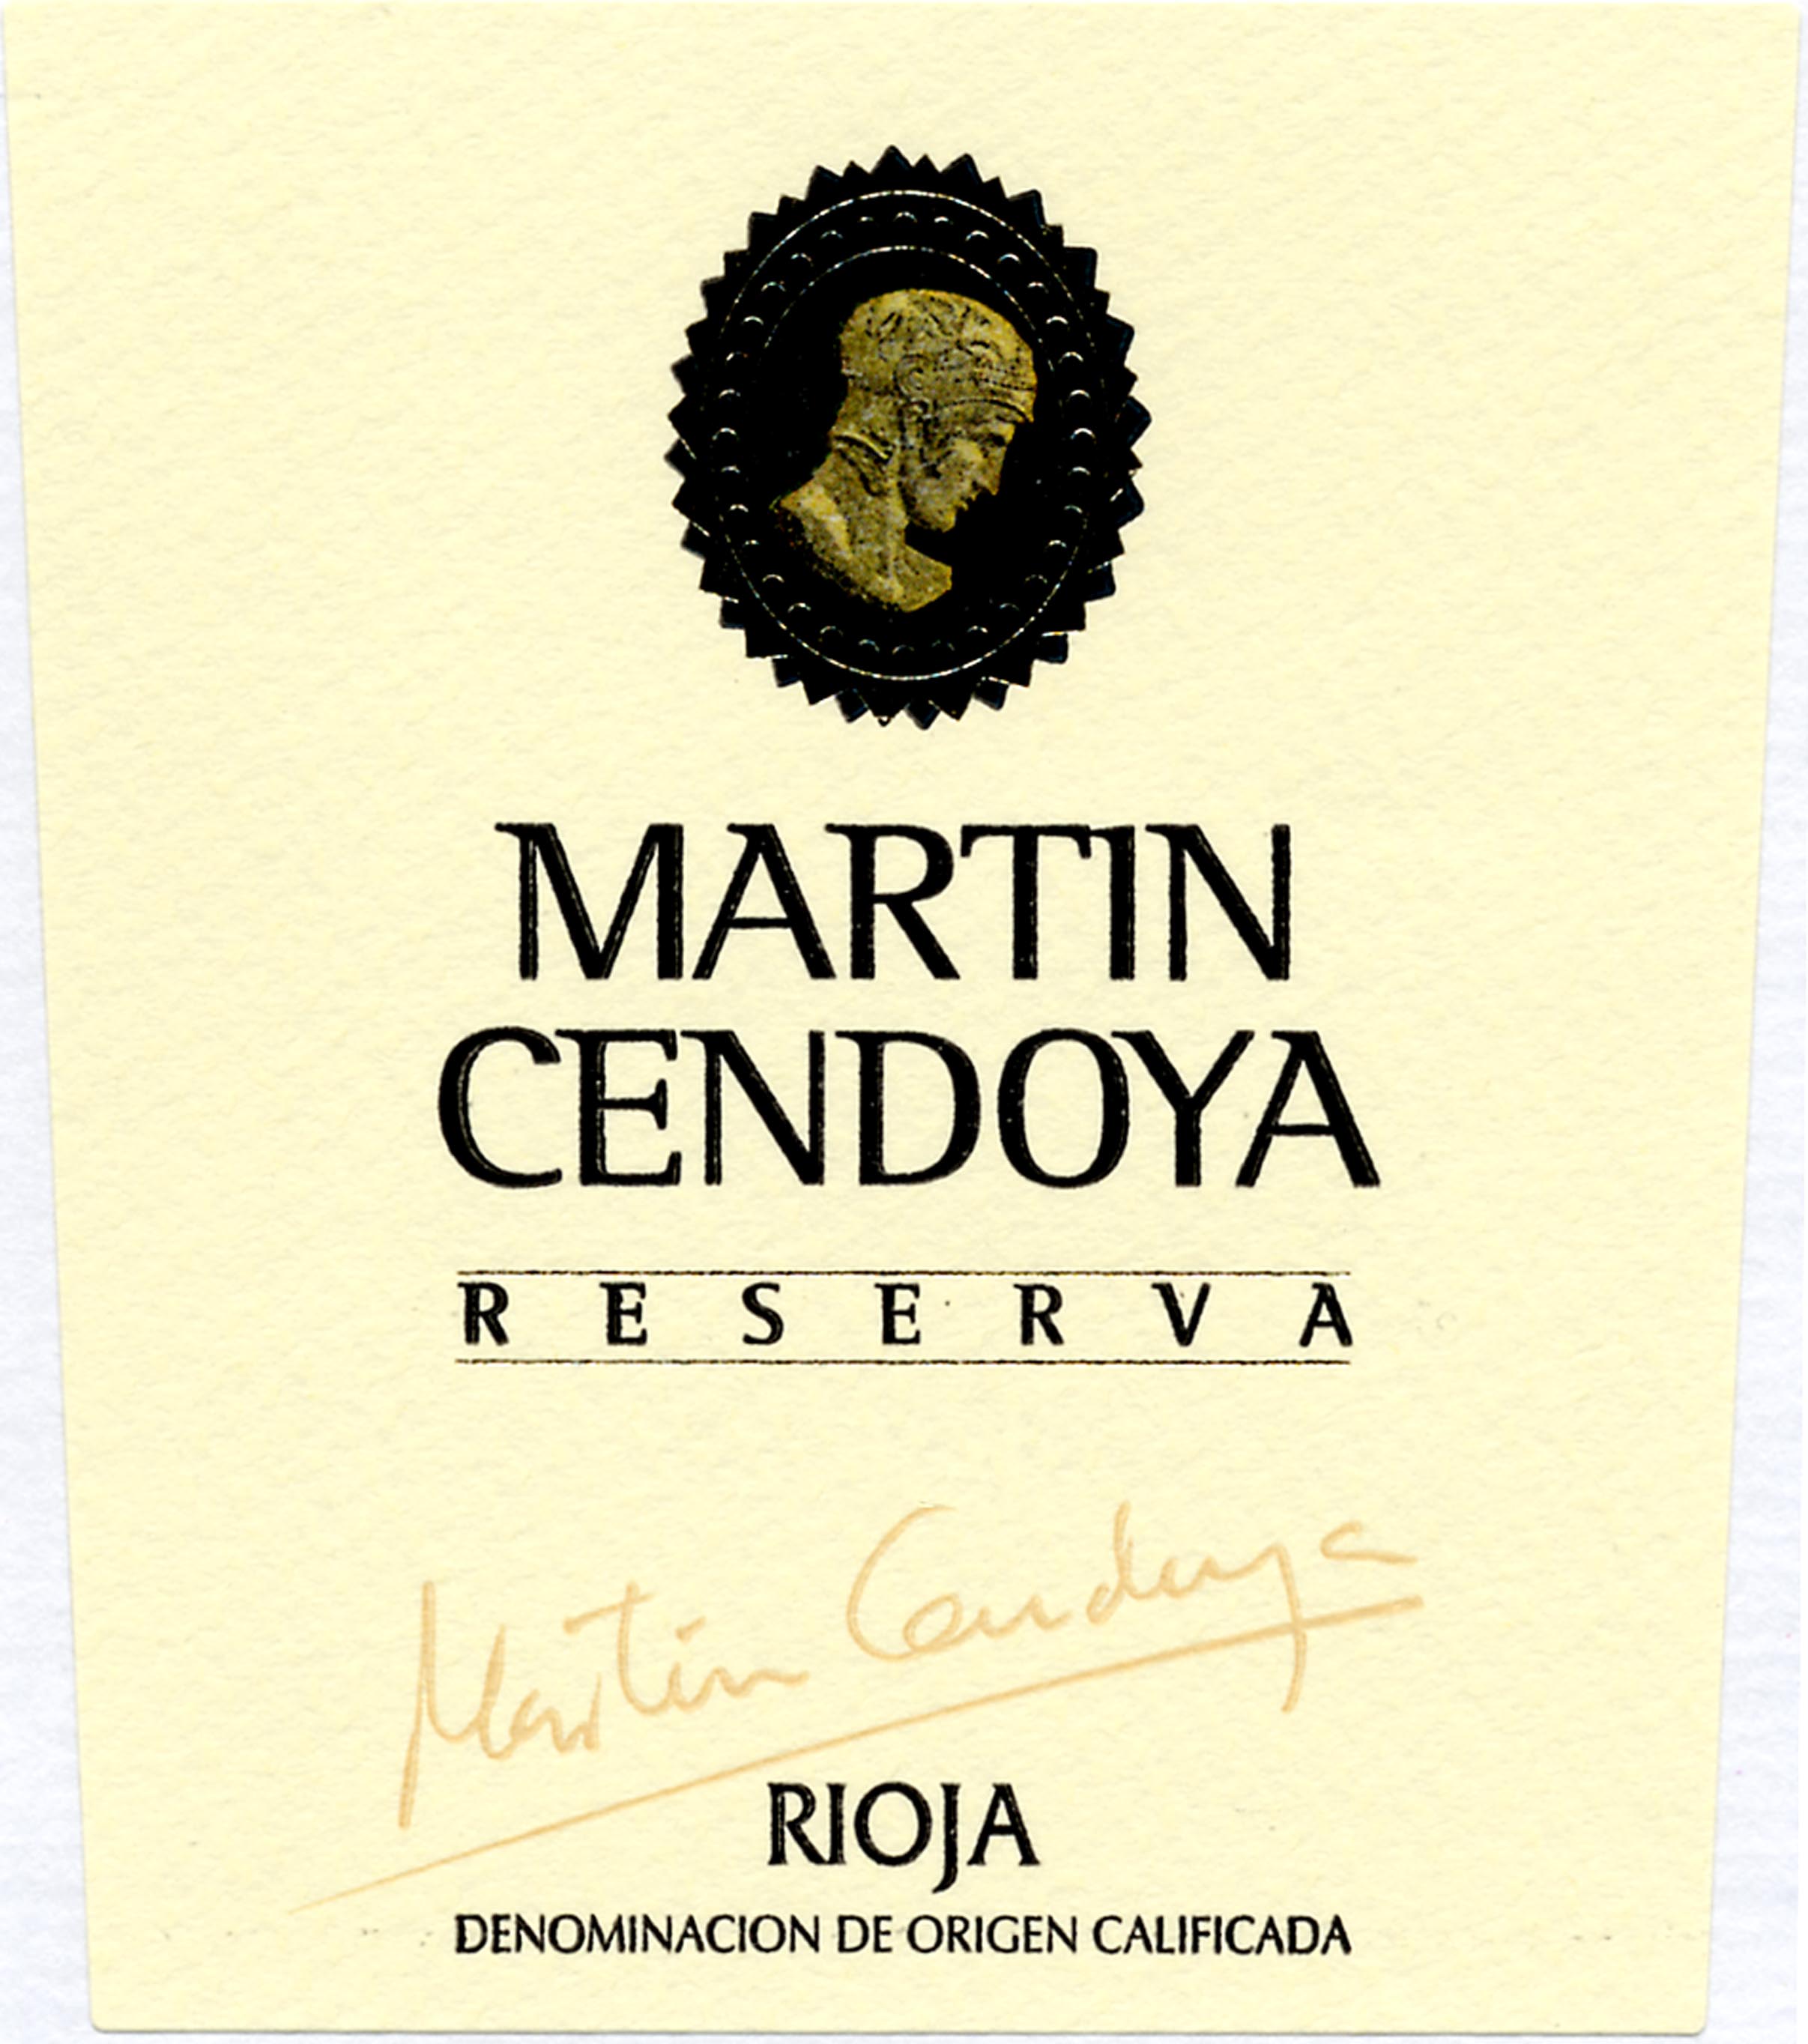 Martin Cendoya - Rioja - Reserva label